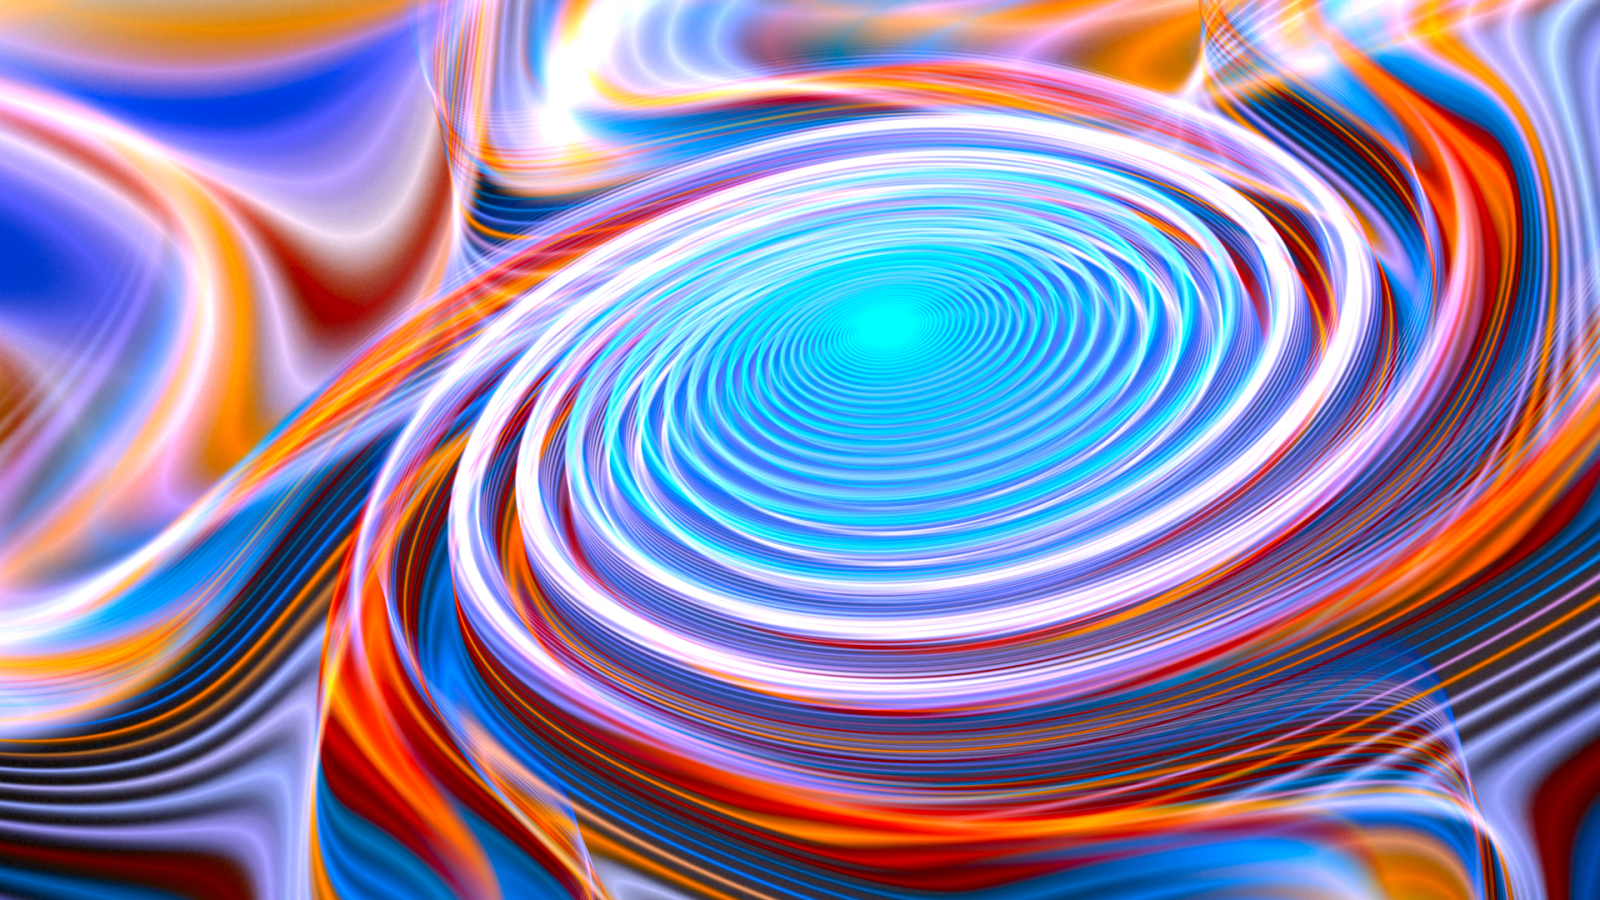 colorful, illustration, digital art, neon, abstract, spiral, blue, fractal, pattern, circle, vortex, color, wave, shape, design, line, computer wallpaper, fractal art, psychedelic art. Mocah HD Wallpaper